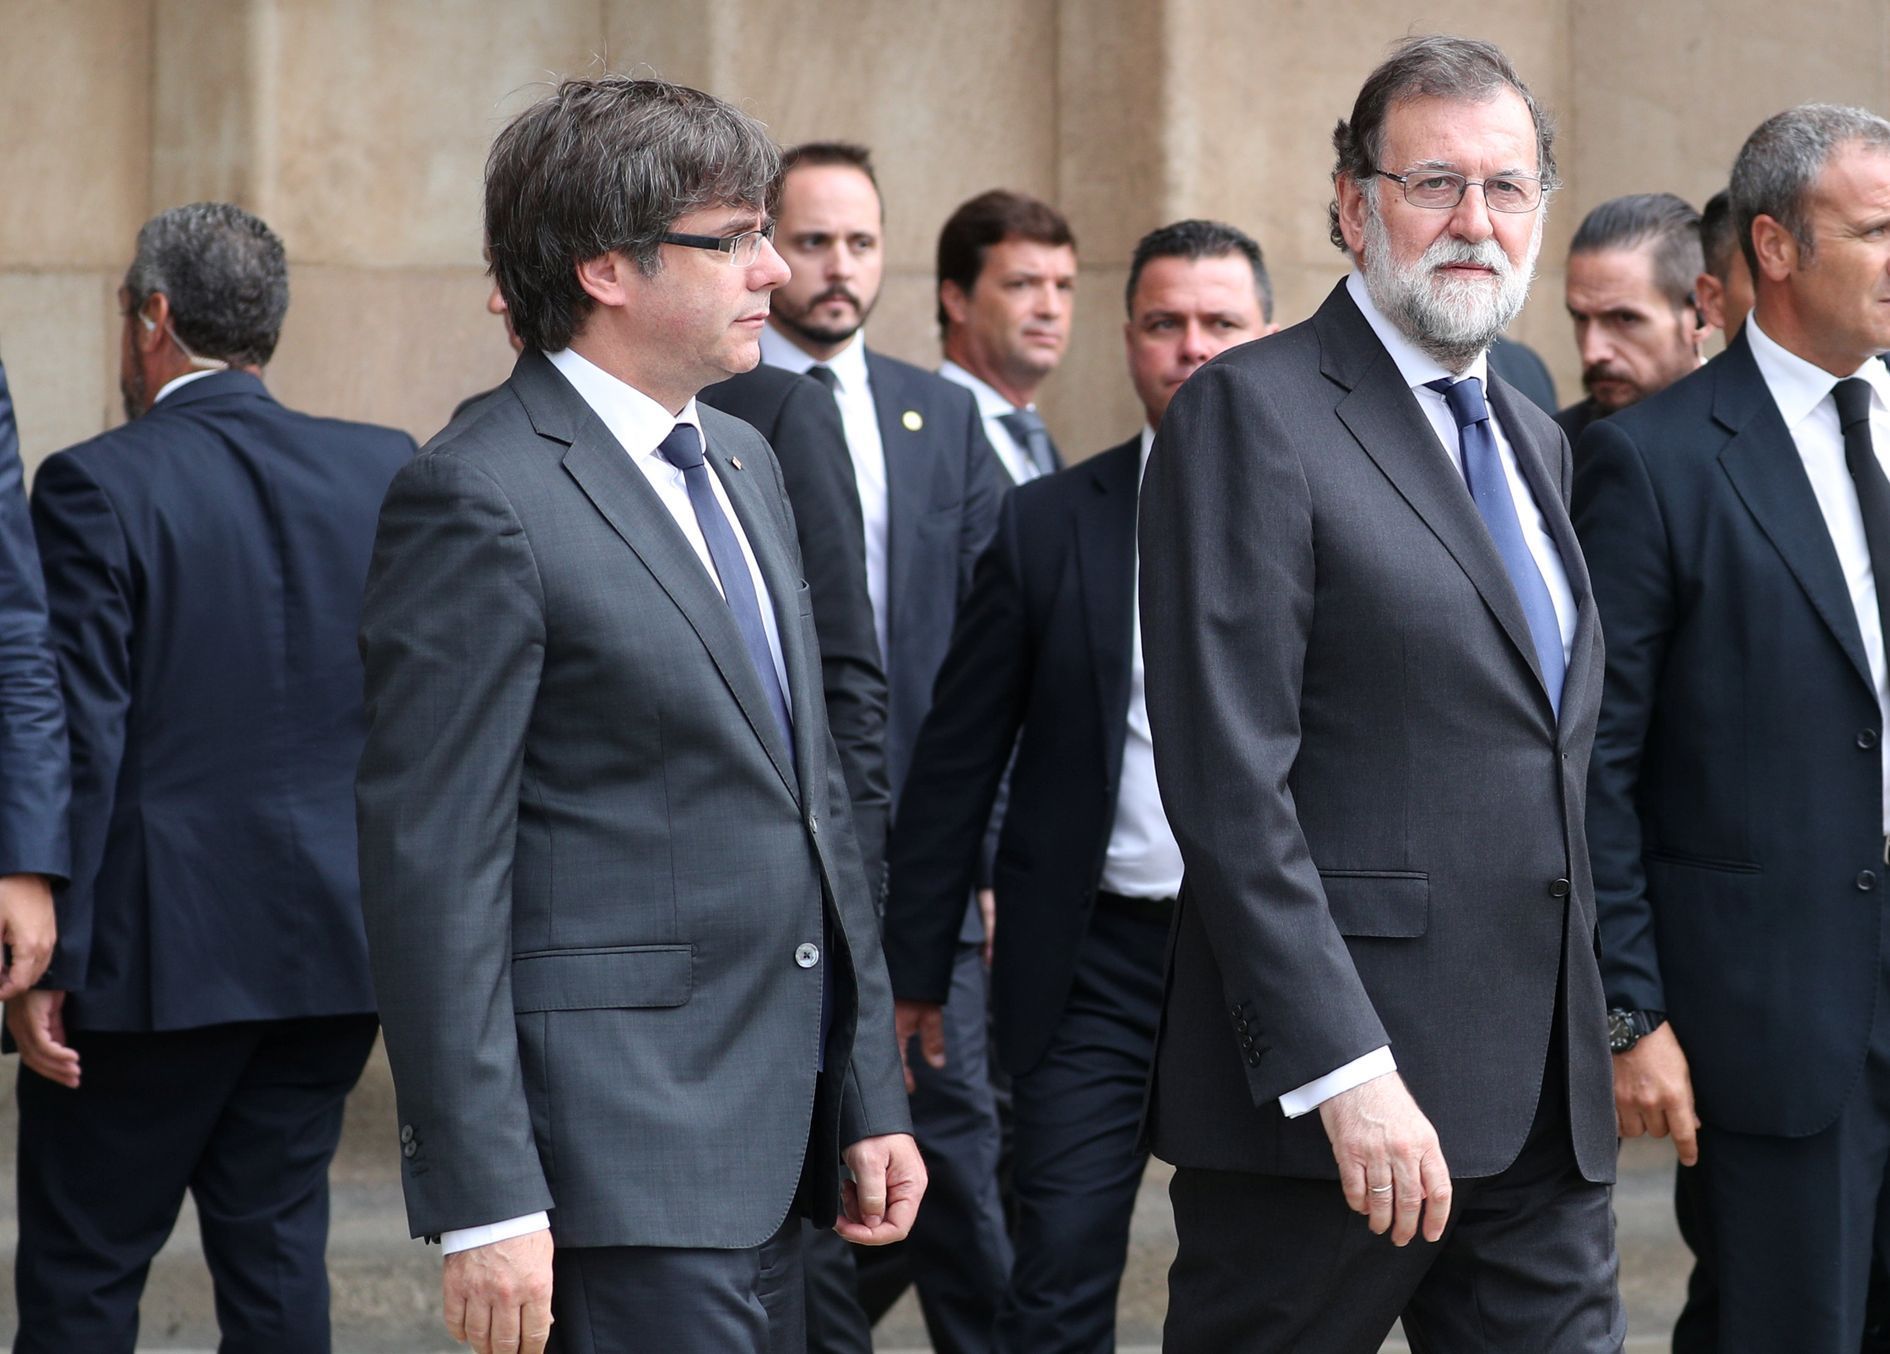 Carles Puigdemont, Mariano Rajoy